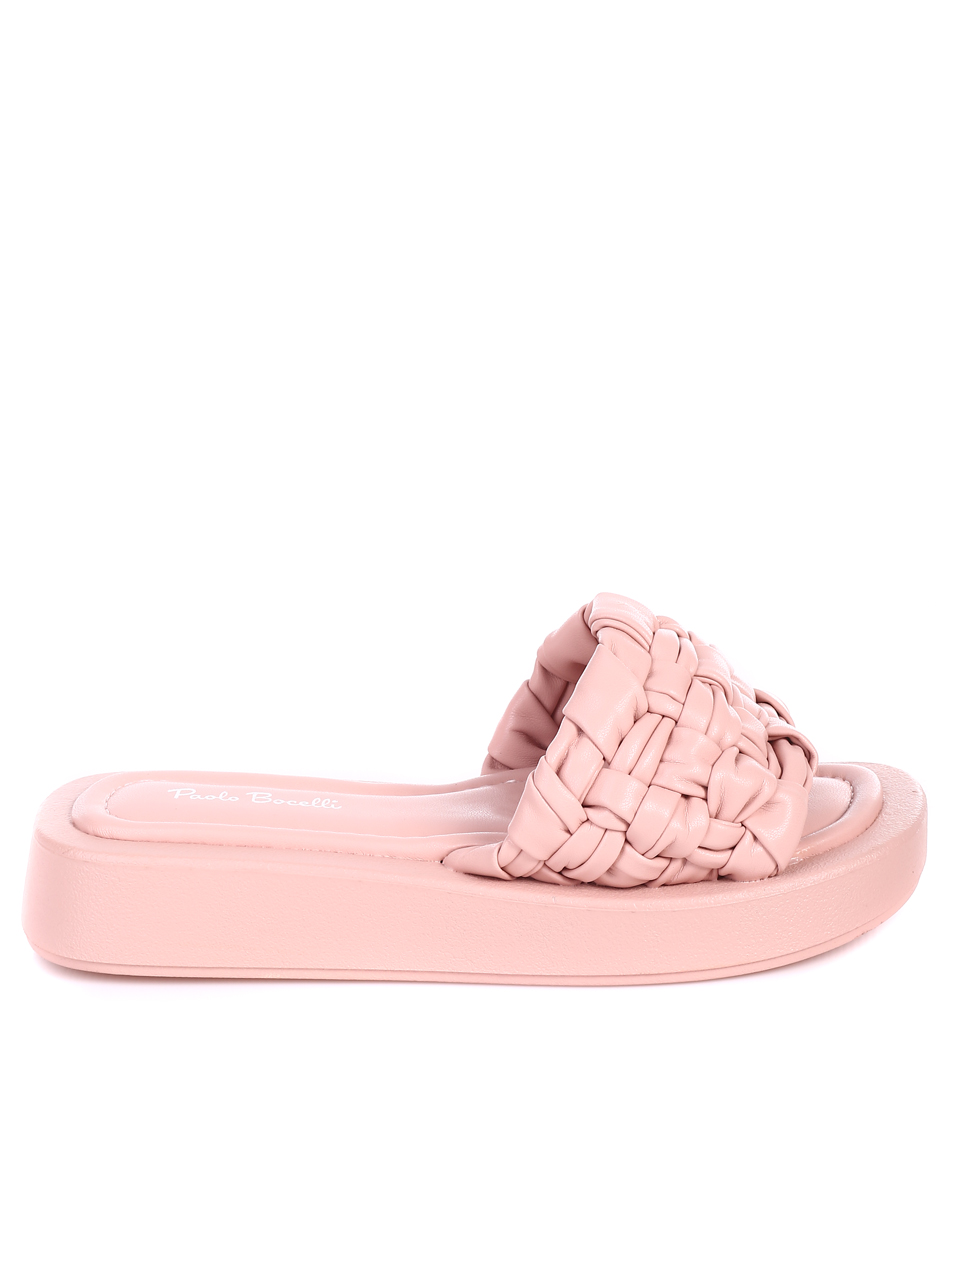 Ежедневни дамски комфортни чехли в розово 5C-22162 pink